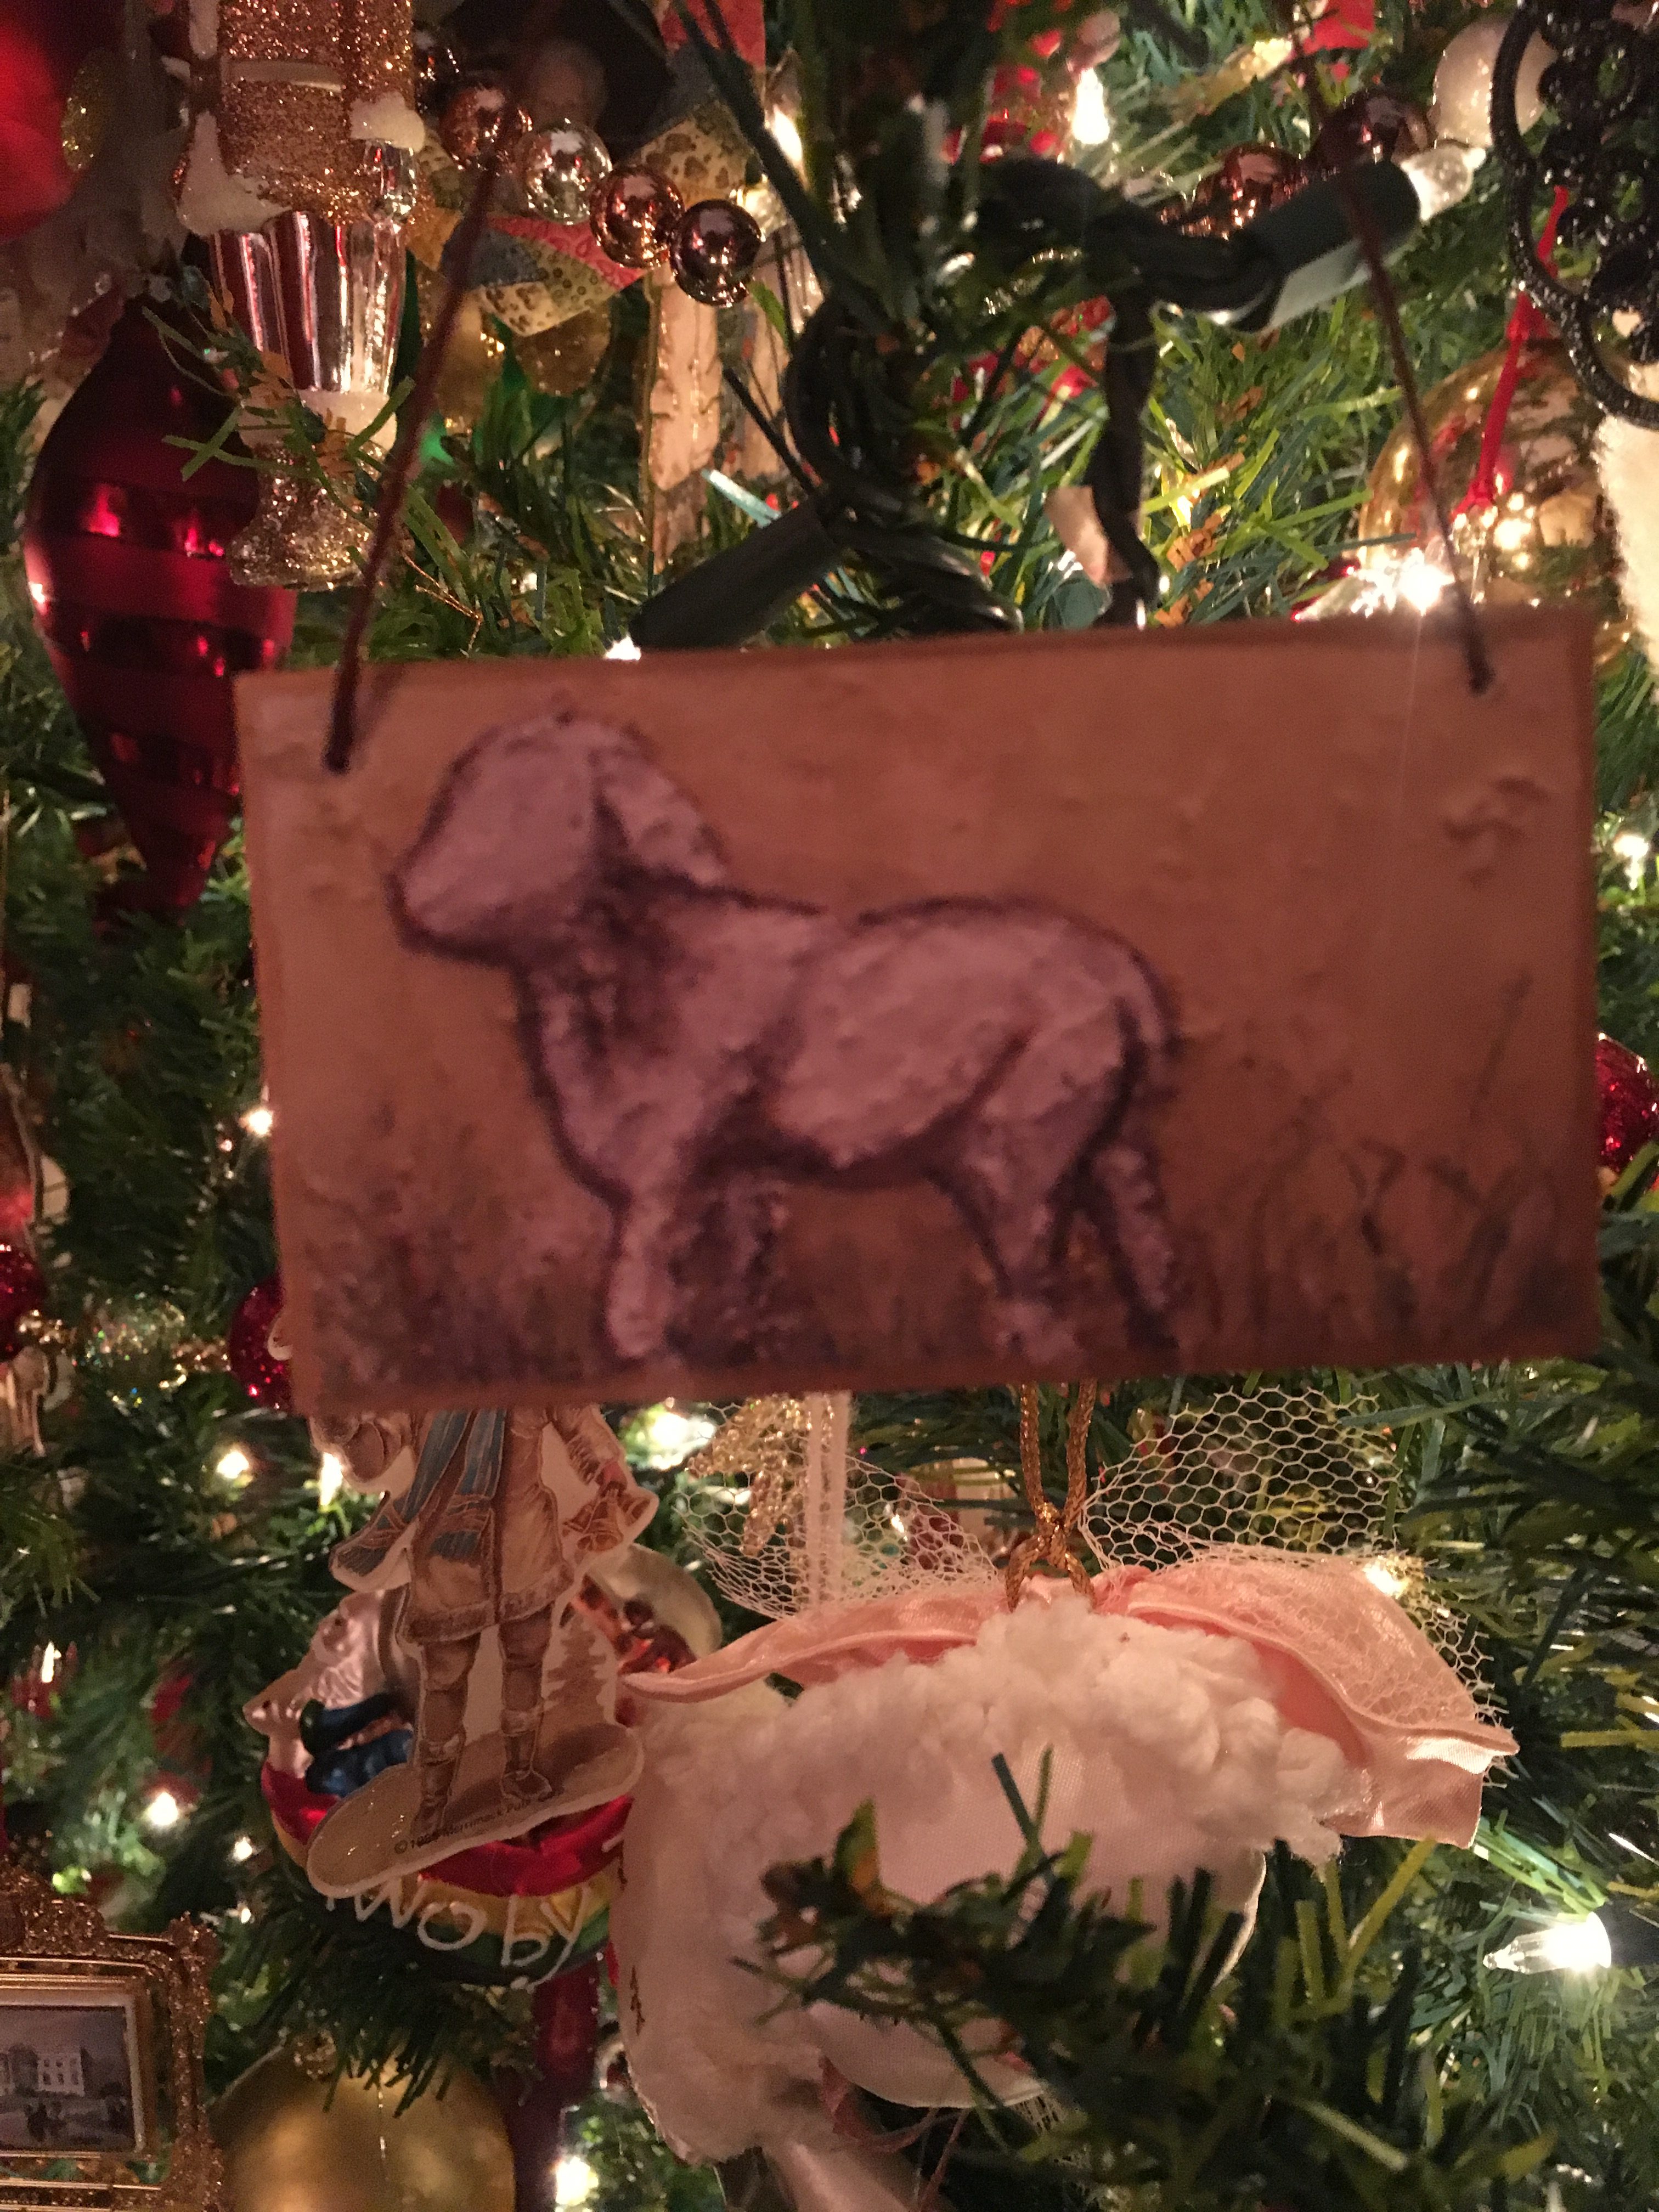 The Christmas Lamb